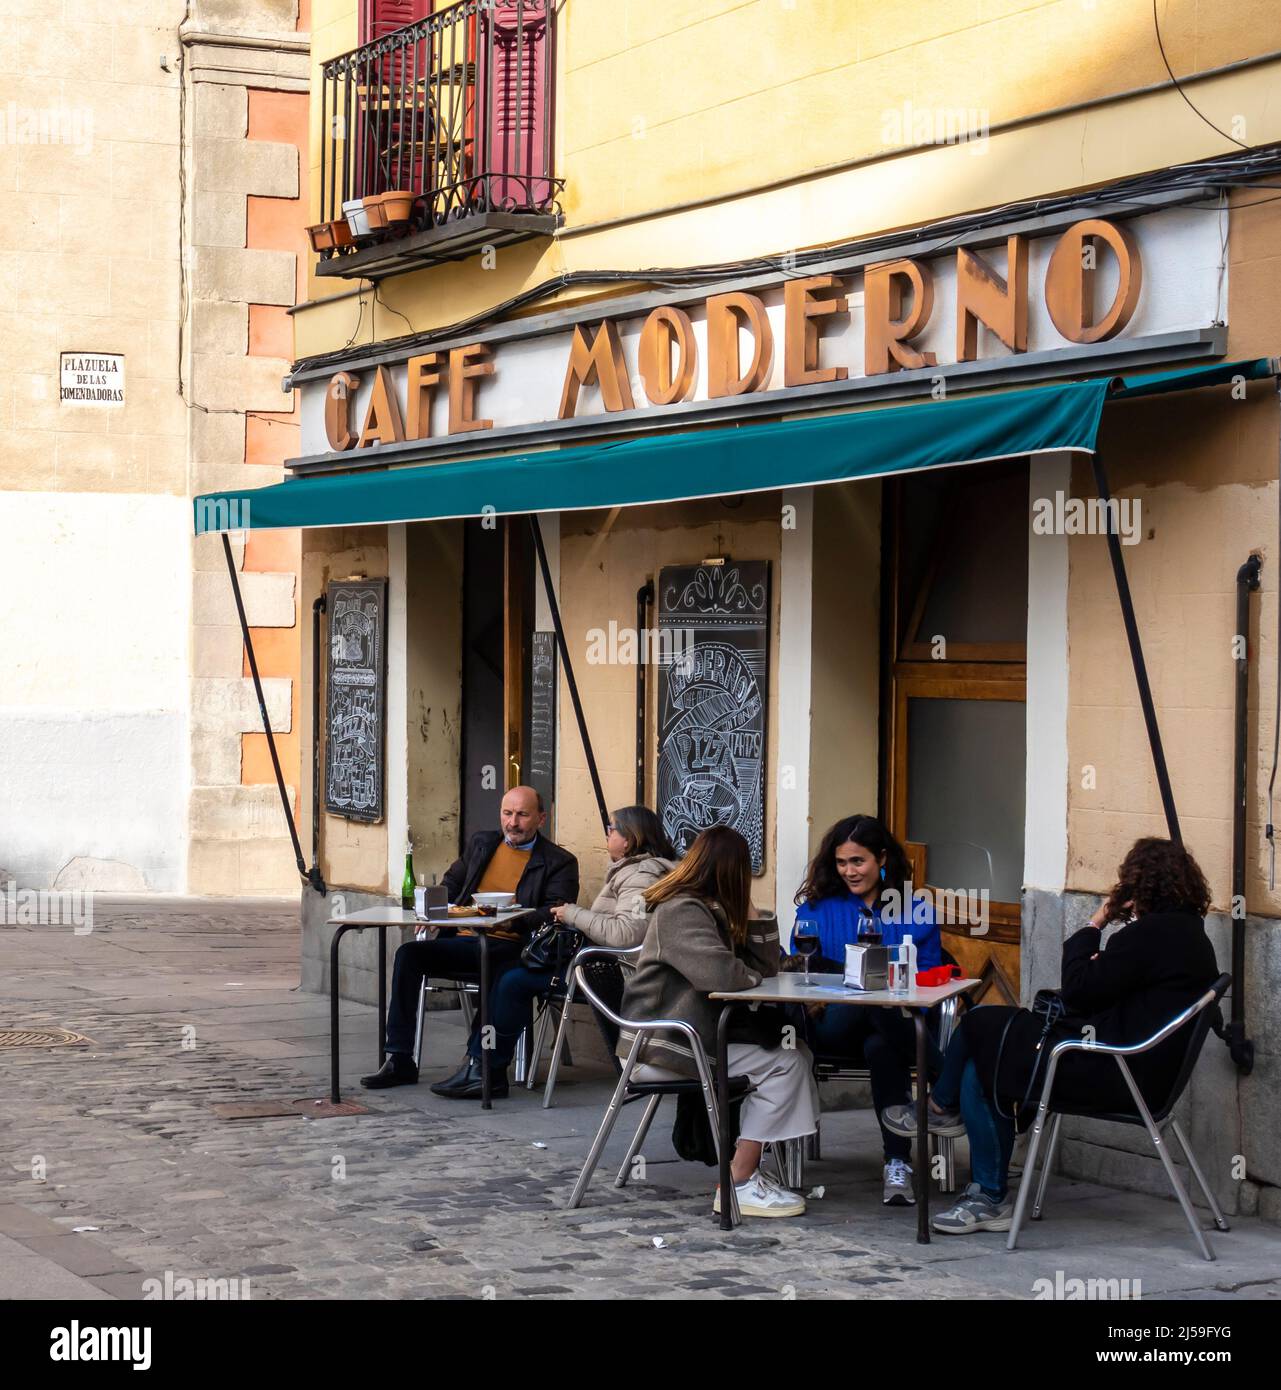 Cafe Moderno. Outdoor terrace at La Plaza de las Comendadoras, Madrid, Spain Stock Photo